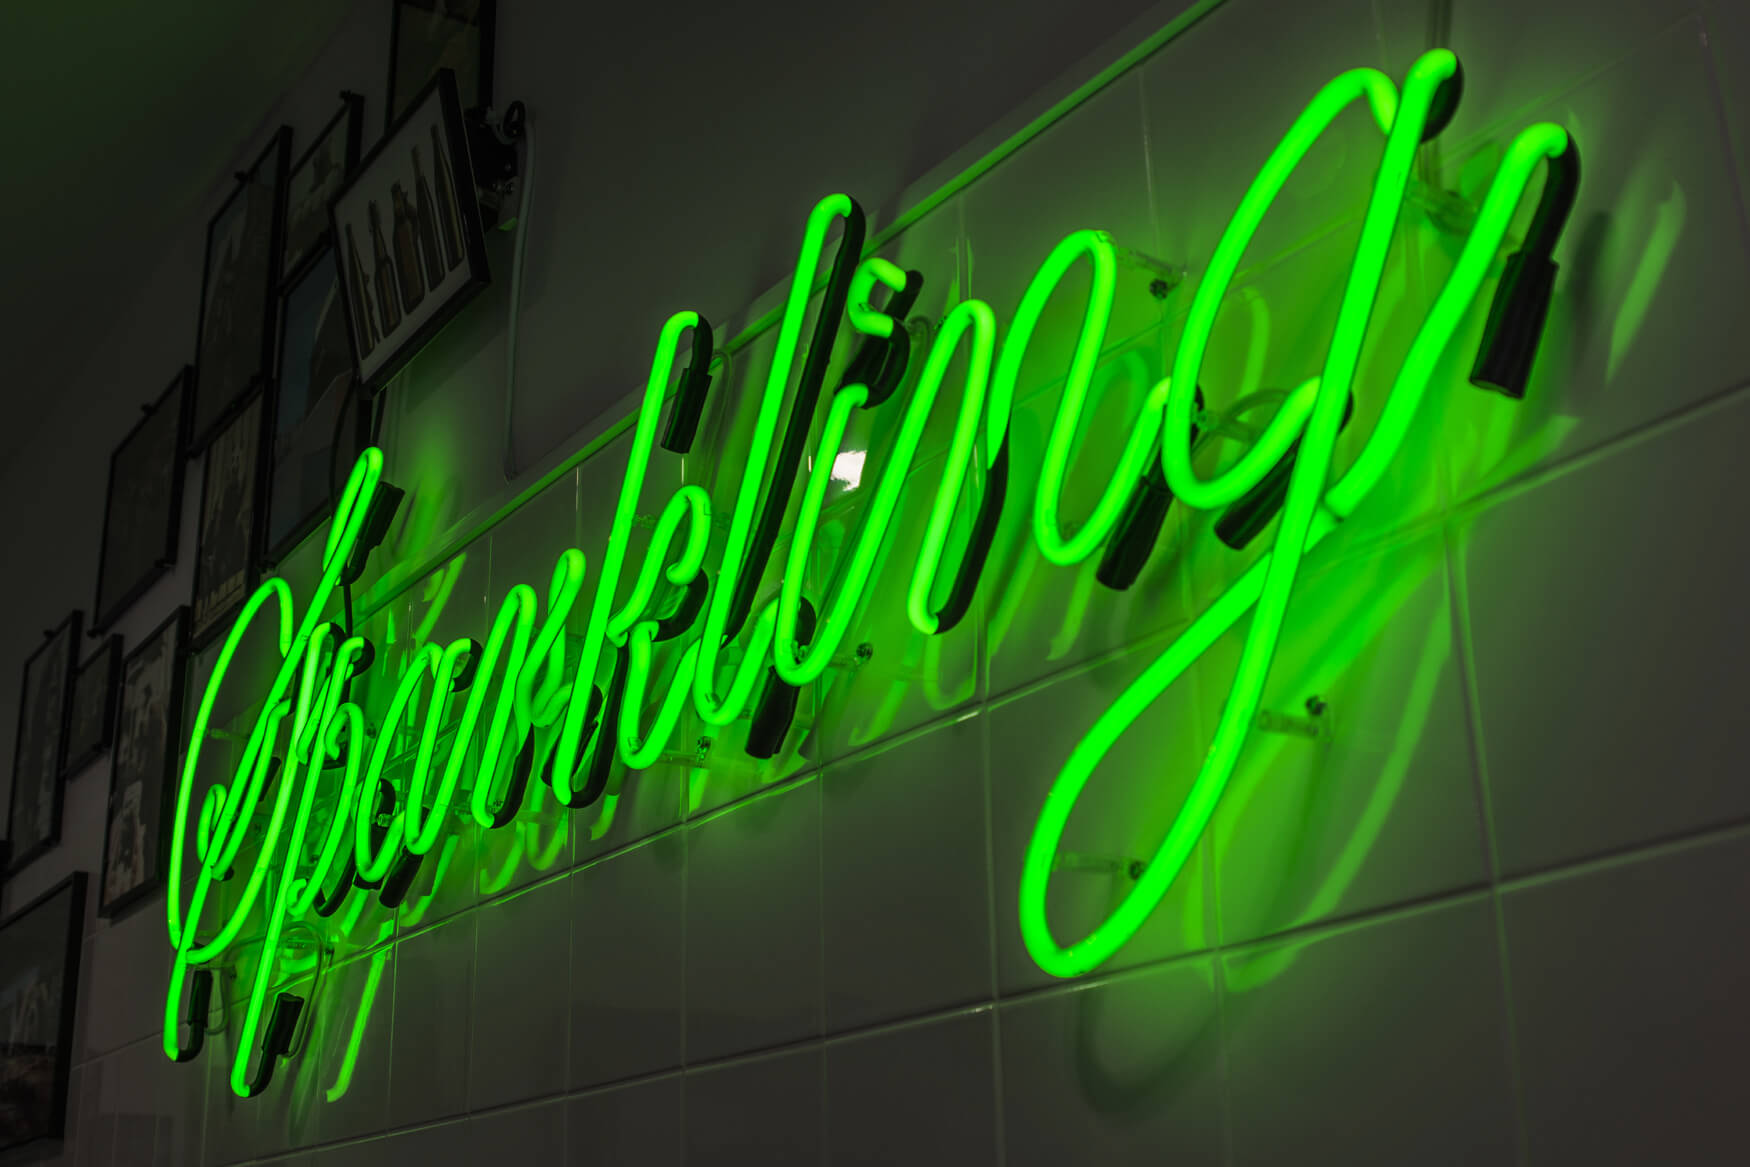 Sparkling - neon-sparkling-świecący-na-zielono-szkło-neonowe-neon-na-kafelkach-neon-na-scianie-neon-wewnatrz-restauracji-nowoczesny-litery-neonowe-napis-neonowy